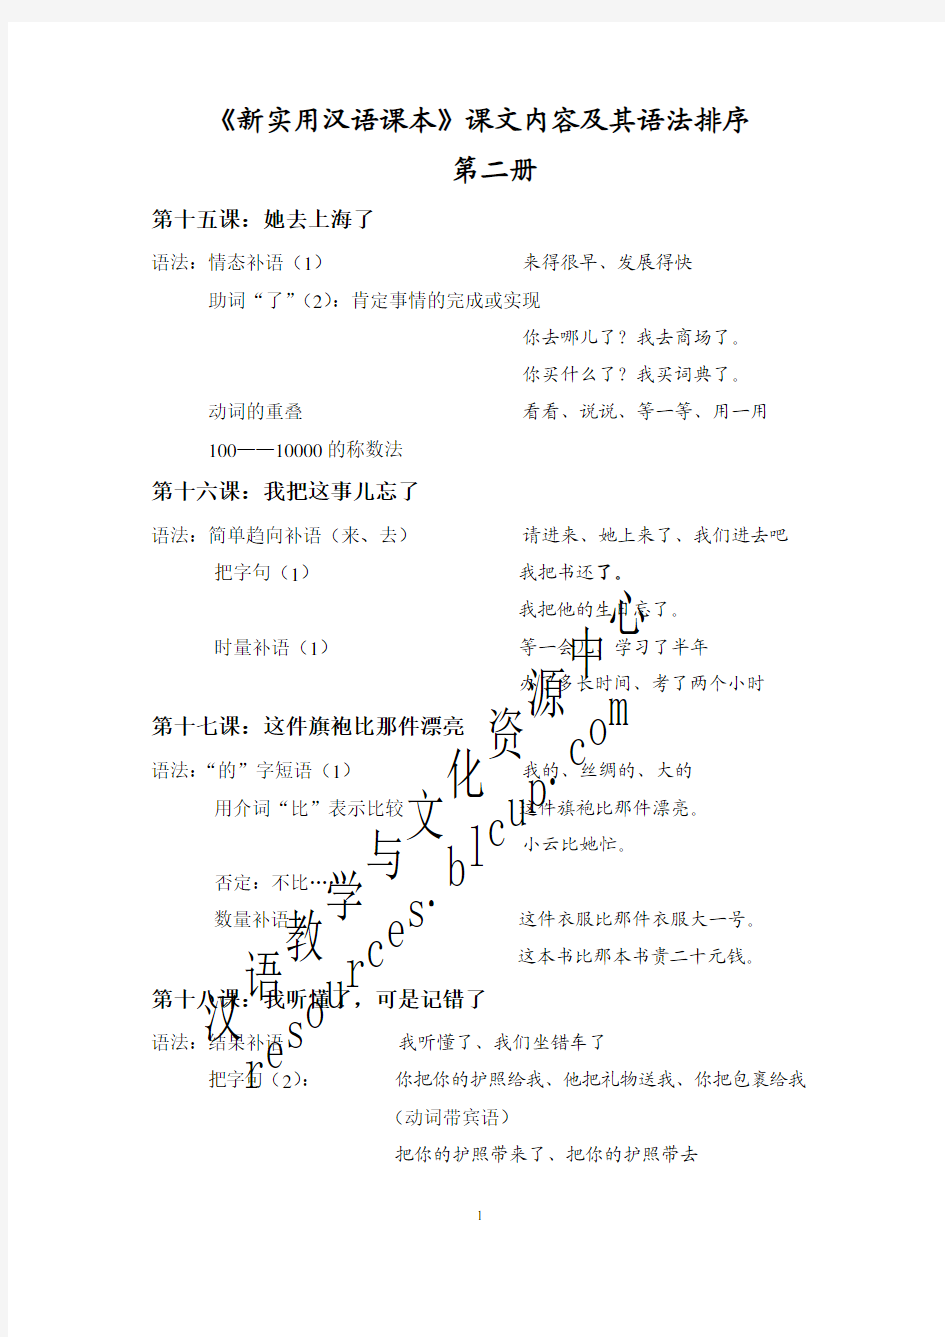 《新实用汉语课本》课文内容及其语法排序 第二册